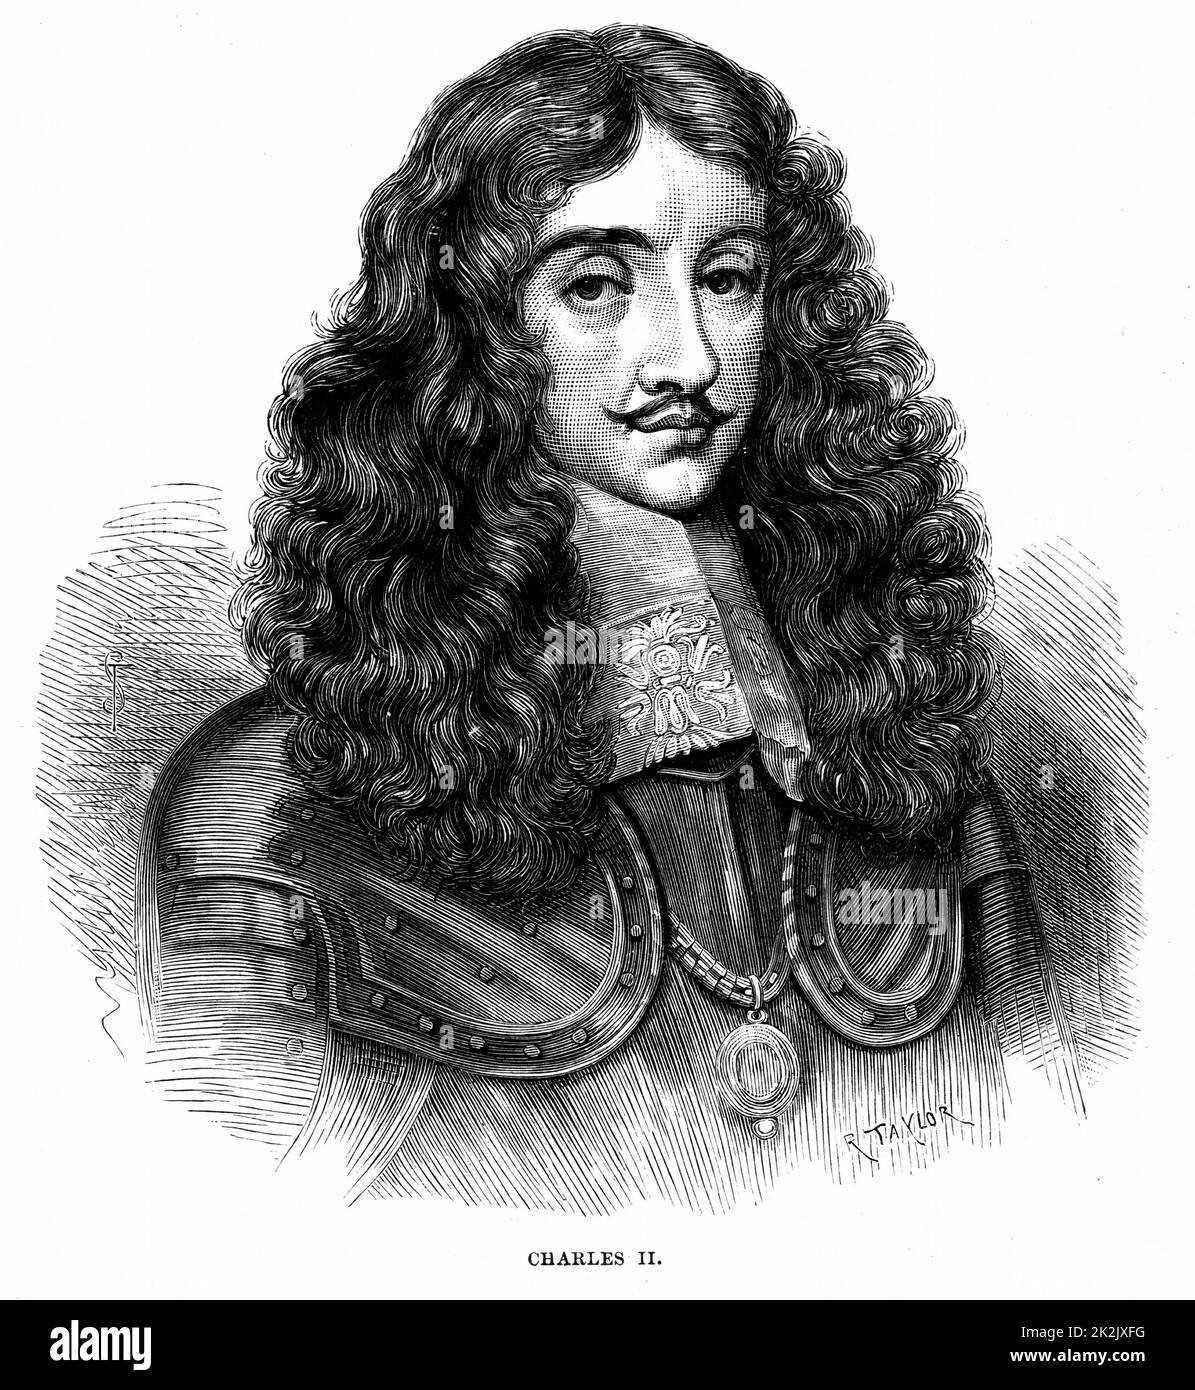 Karl II. (1630-85) König von Großbritannien und Irland ab 1660 nach der Wiederherstellung der Monarchie. Gravur Stockfoto